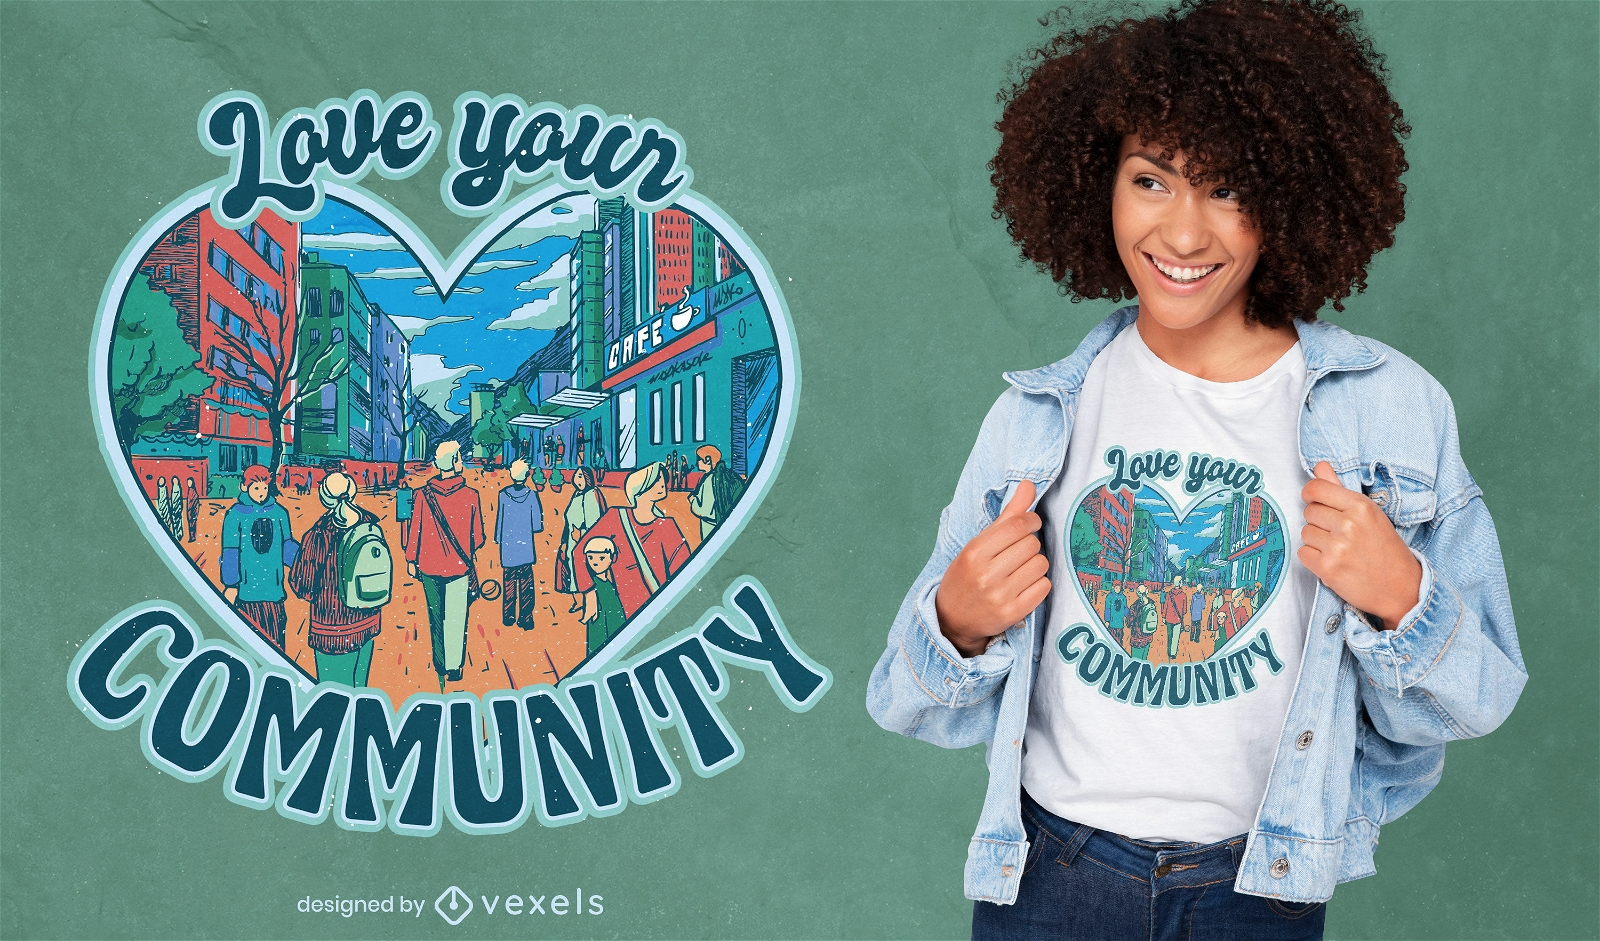 Me encanta el diseño de camiseta de tu comunidad